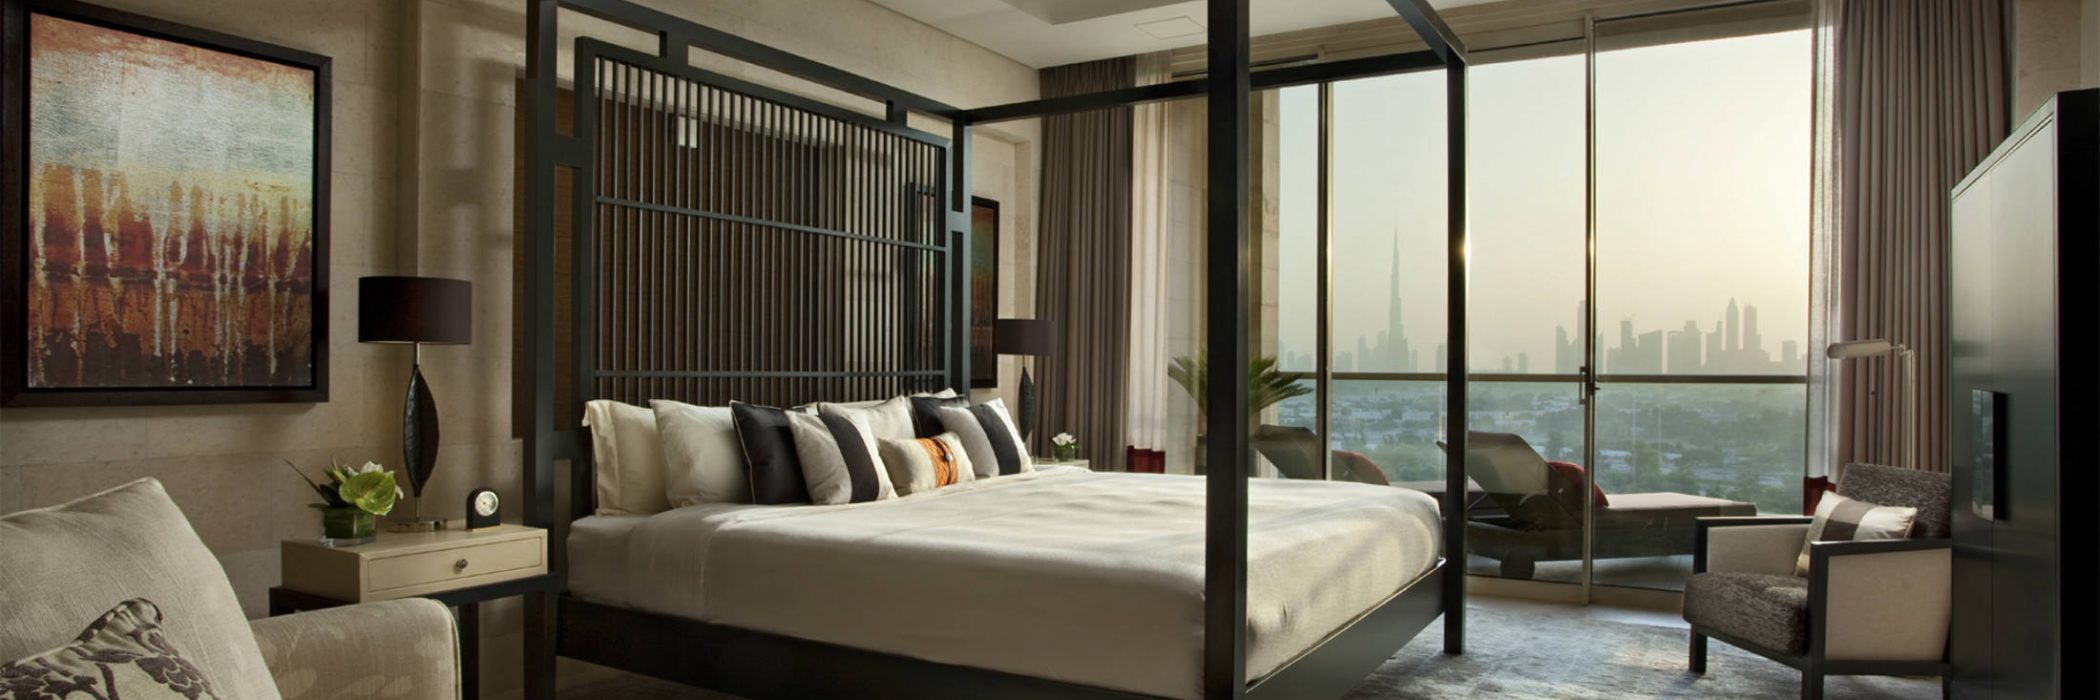 Raffles Dubai - Rooms & Suites